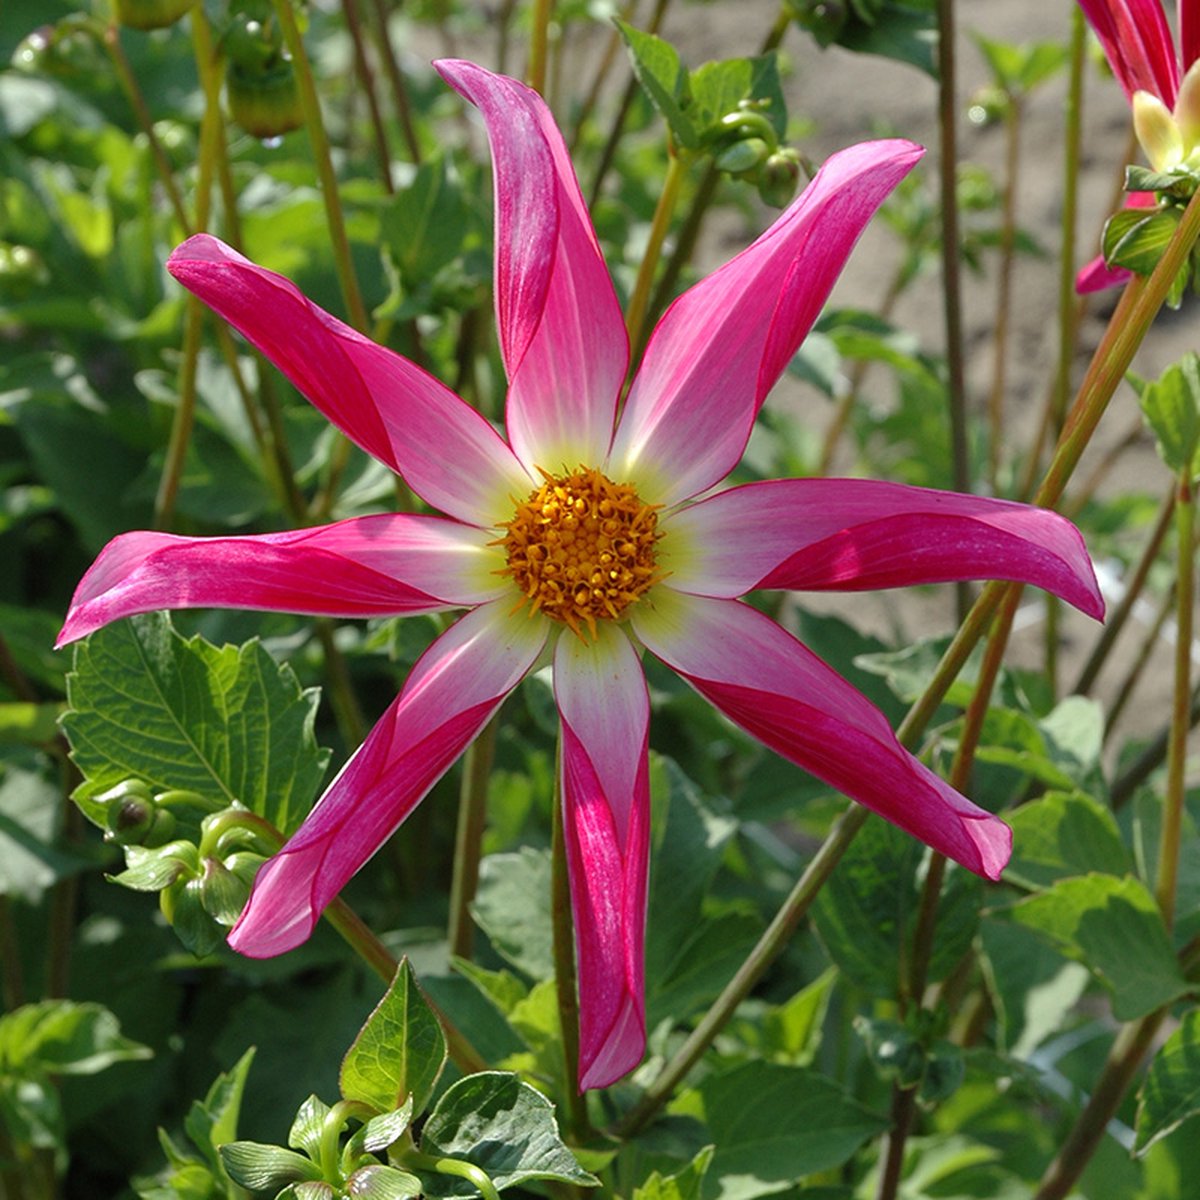 Dahlia Honka Pink | 3 stuks | Orchideetype Dahlia | Knol | Geel | Roze | Wit | Dahlia Knollen van Top Kwaliteit | 100% Bloeigarantie | QFB Gardening